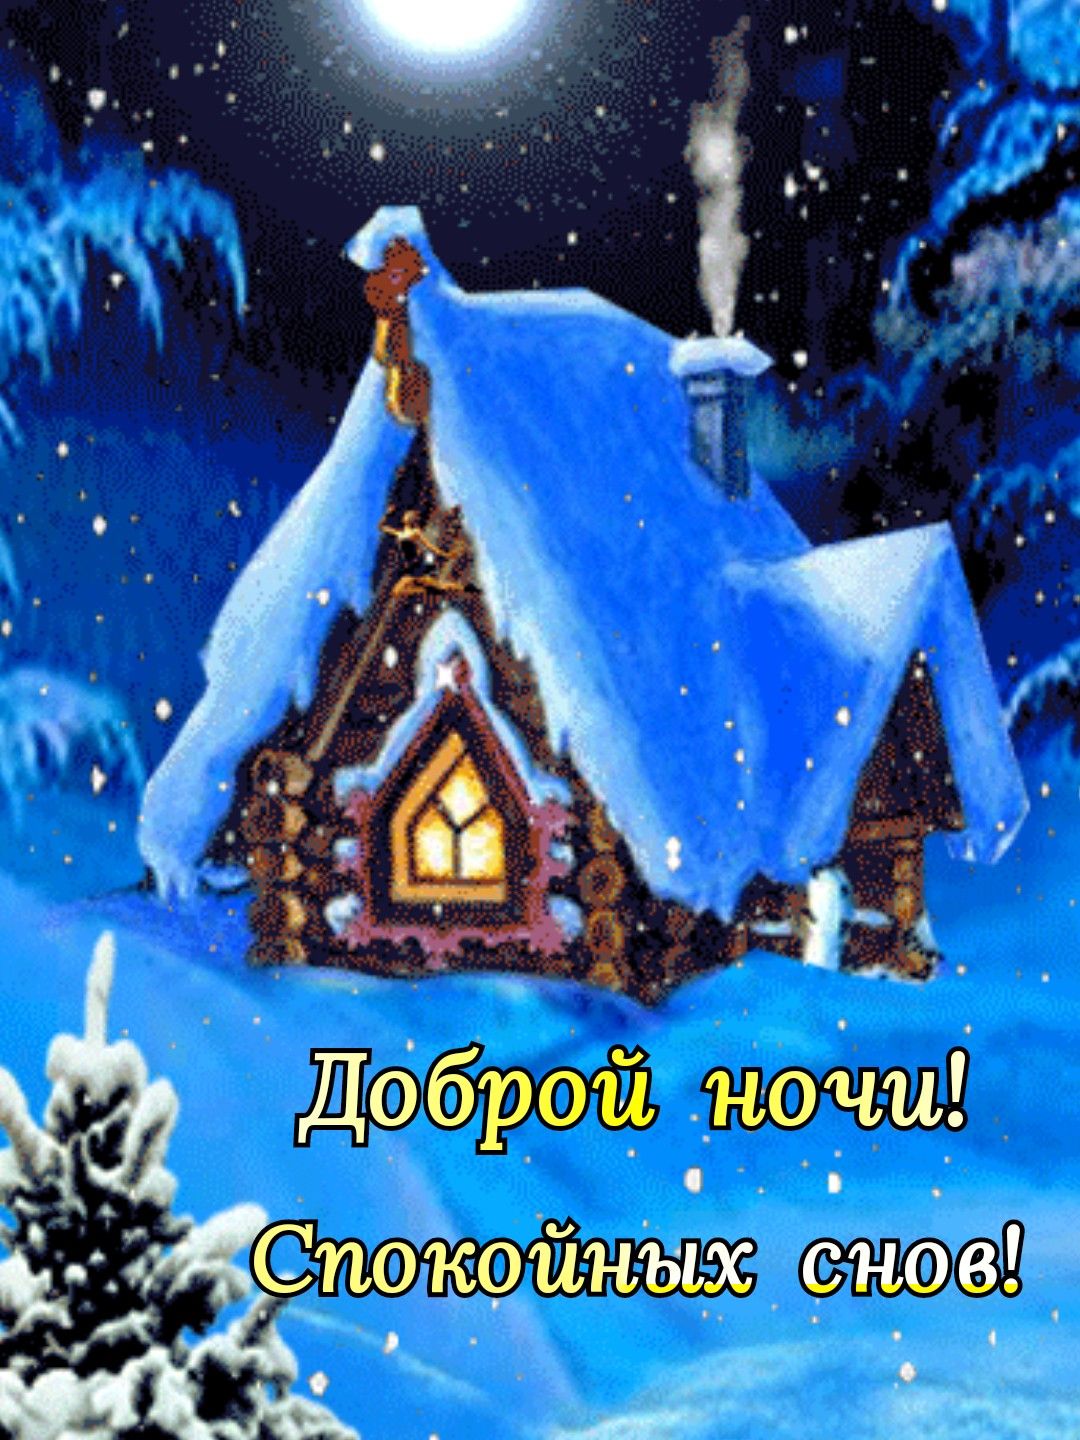 Спокойных снов и доброй ночи зима   картинки (4)